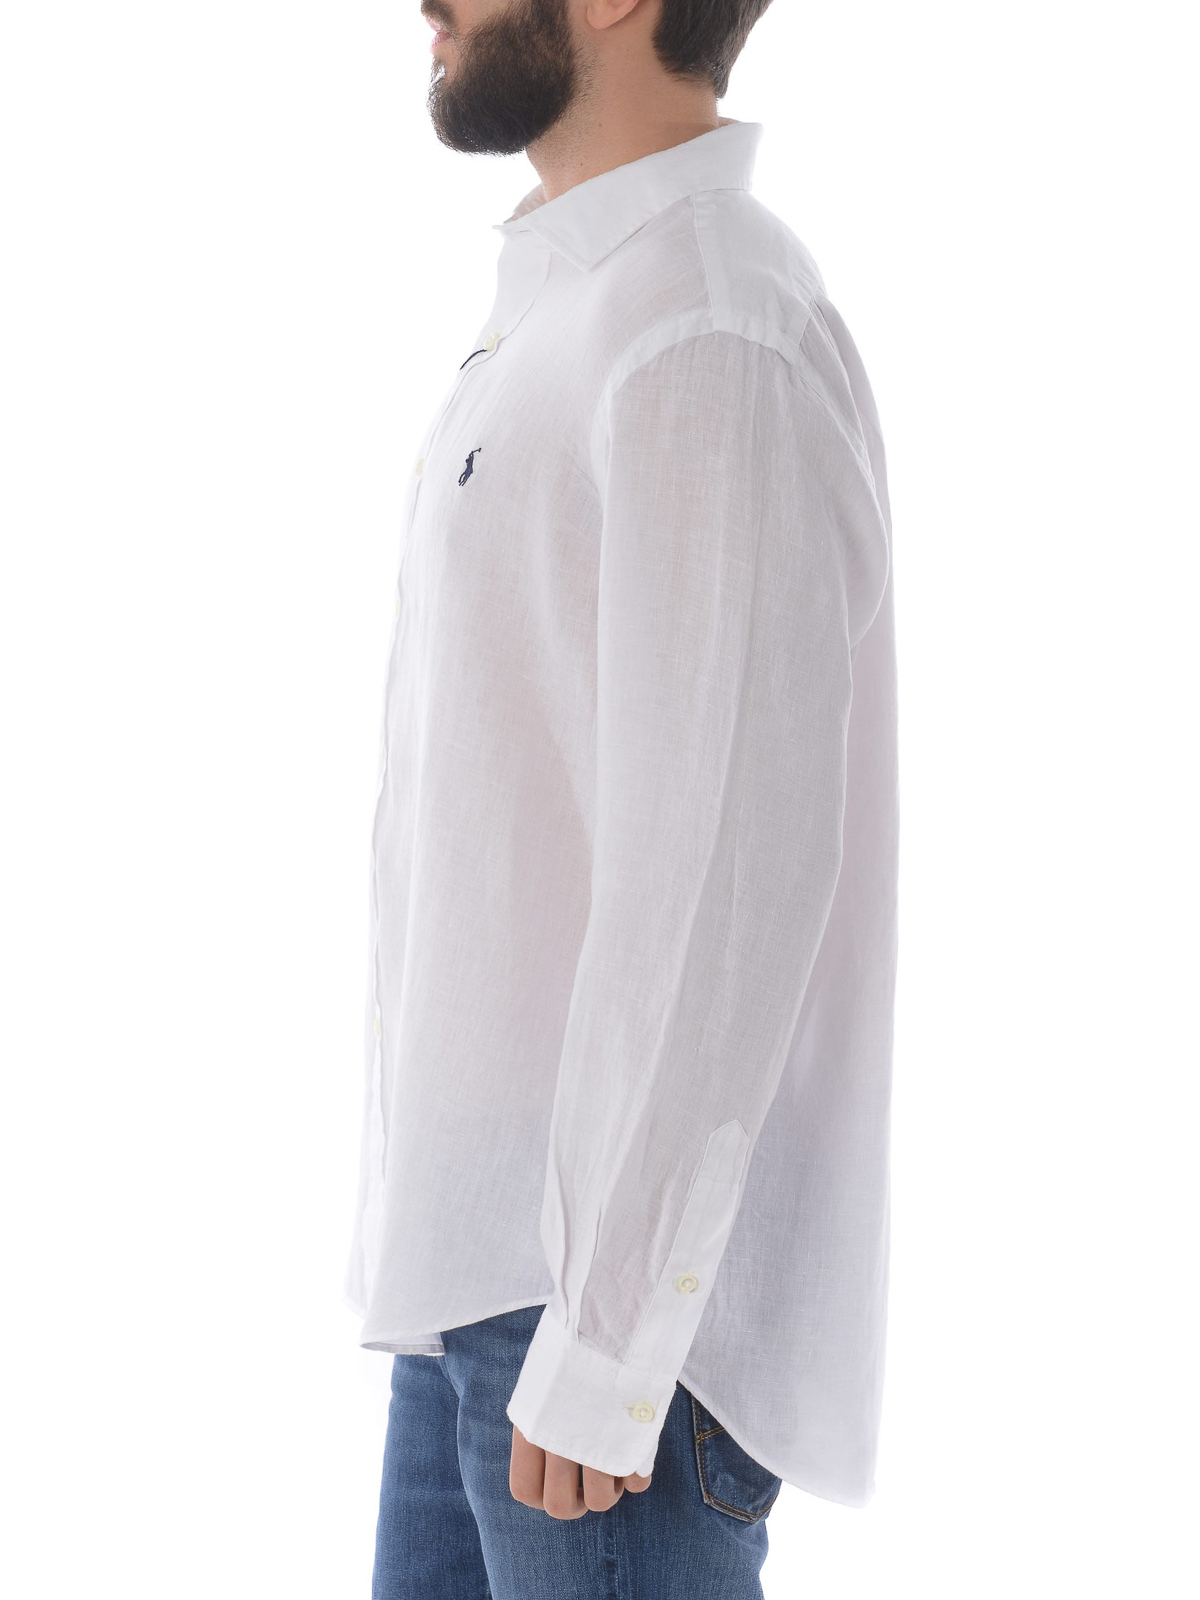 Shirts Polo Ralph Lauren - White linen shirt - 740806004 